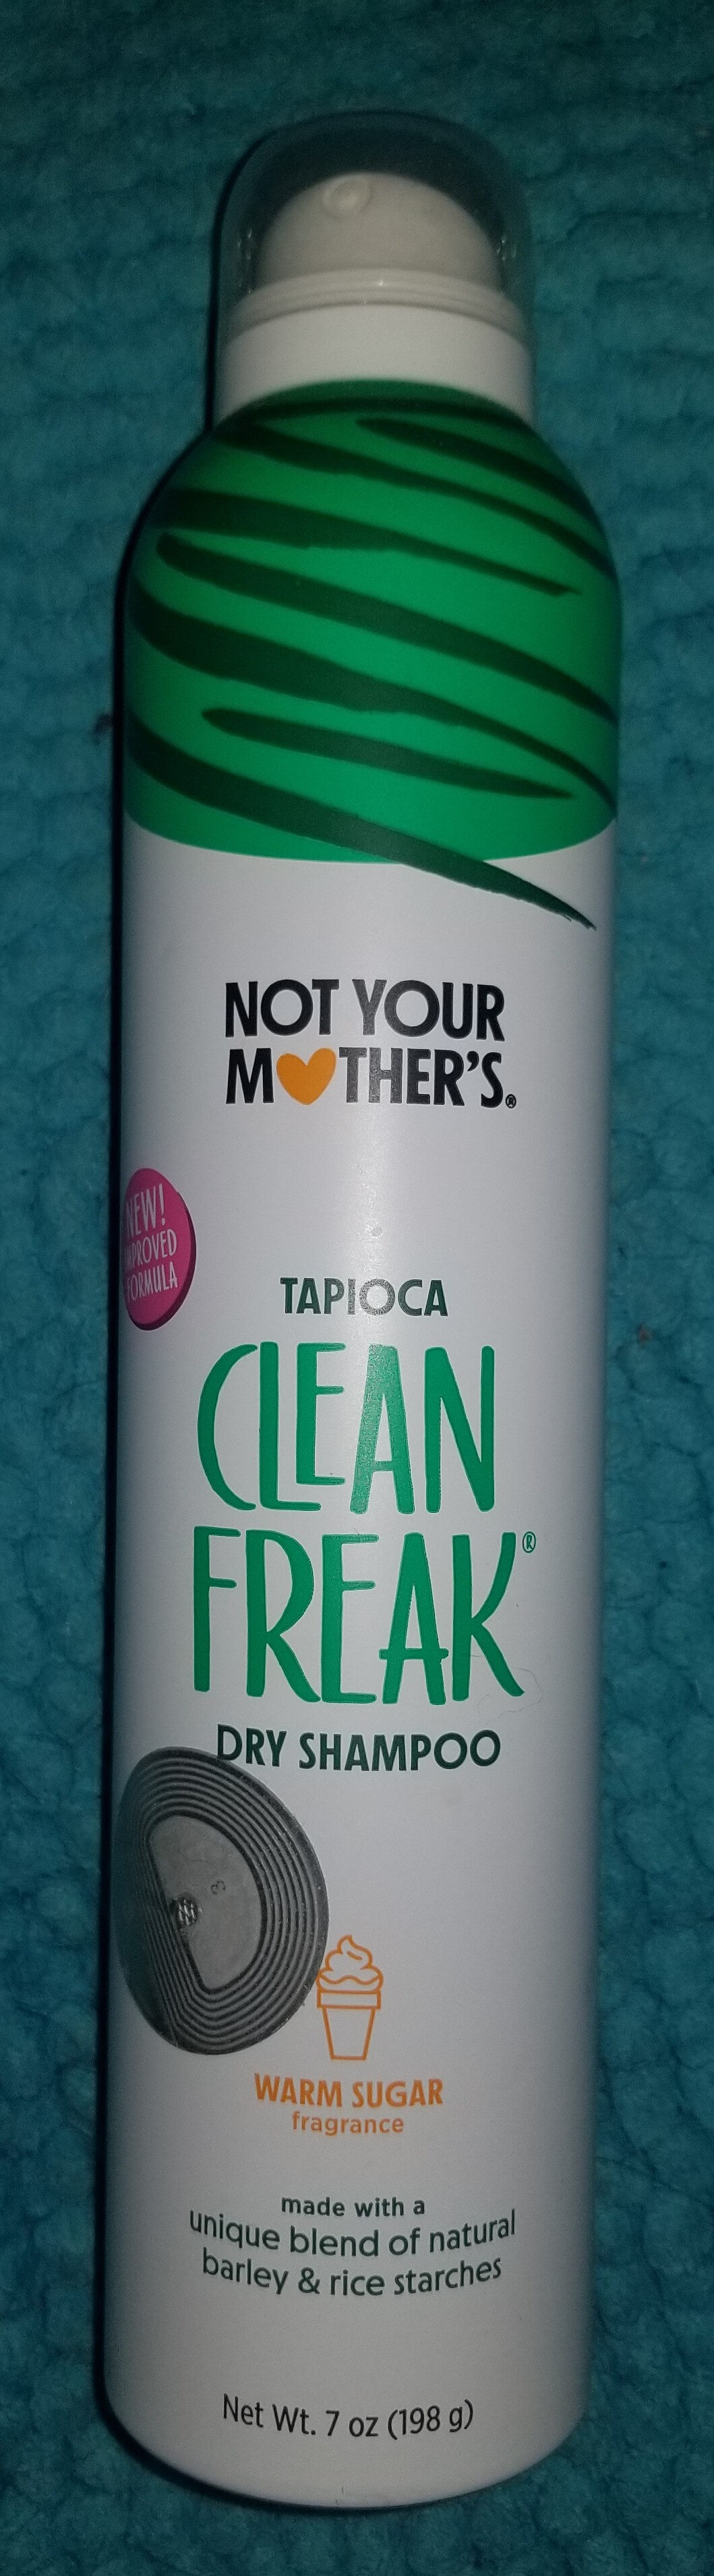 Clean Freak Tapioca Dry Shampoo - Produit - en